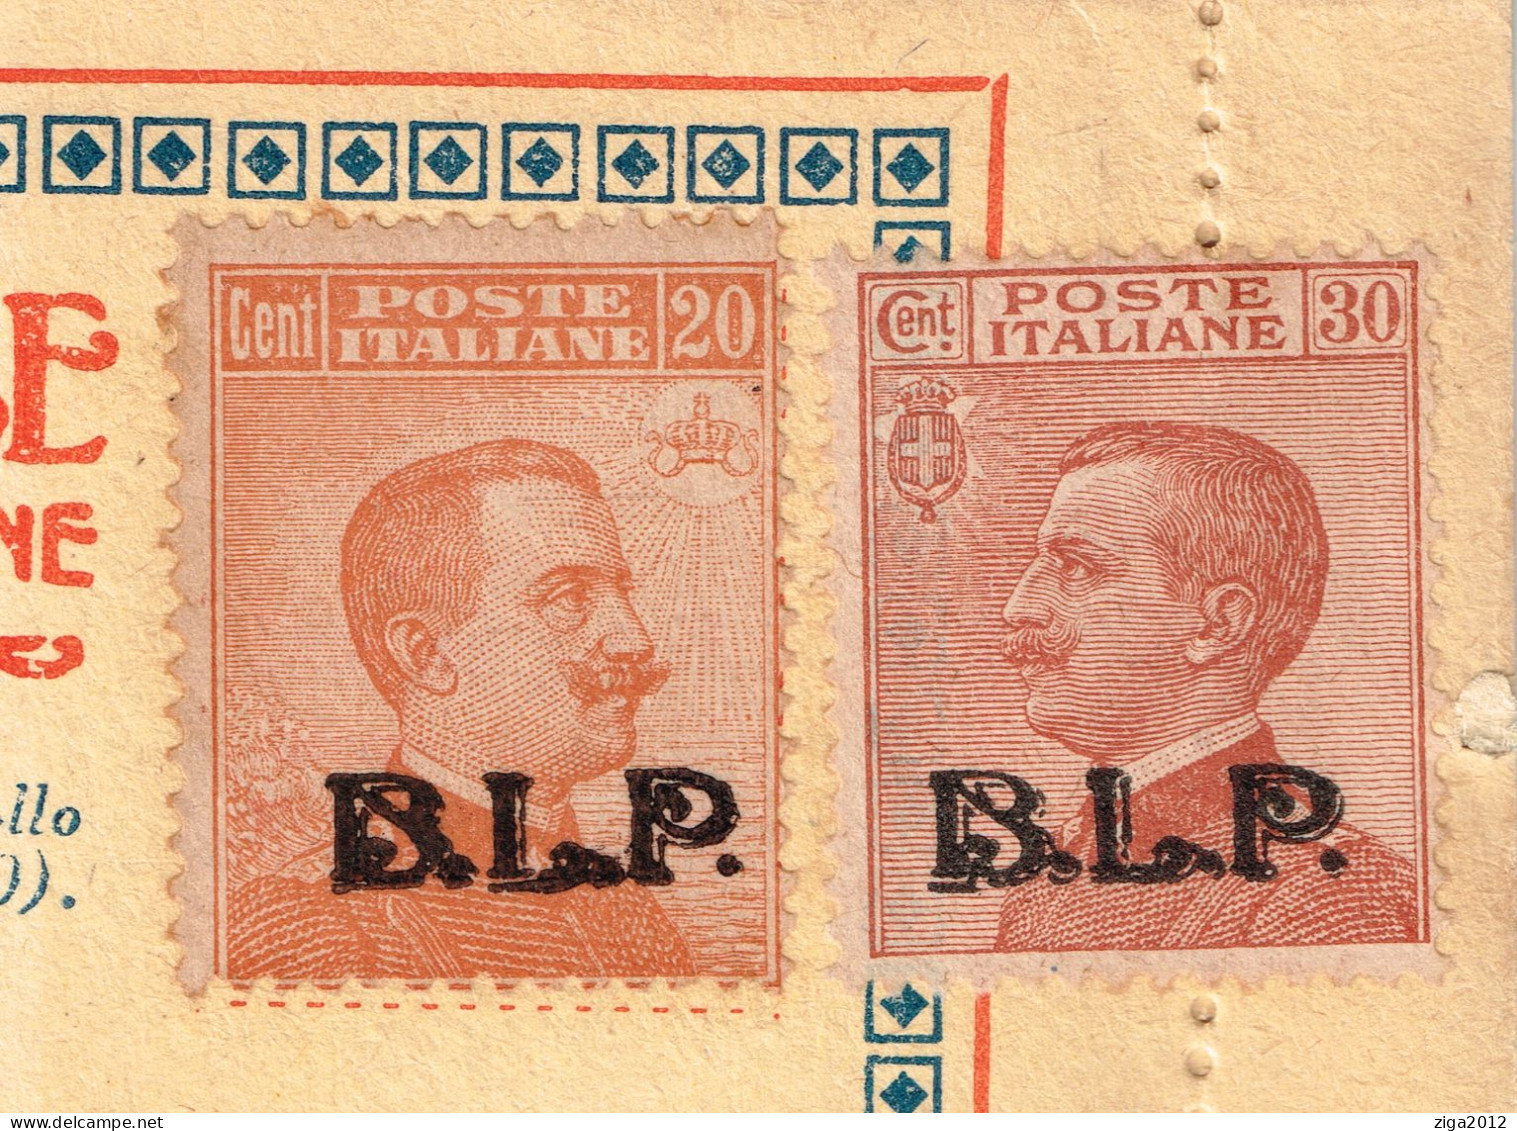 ITALY 1923 B.L.P. BUSTA LETTERA POSTALE CON C.20 III° TIPO + C.30 III° TIPO NUOVA E COMPLETA - Pubblicitari